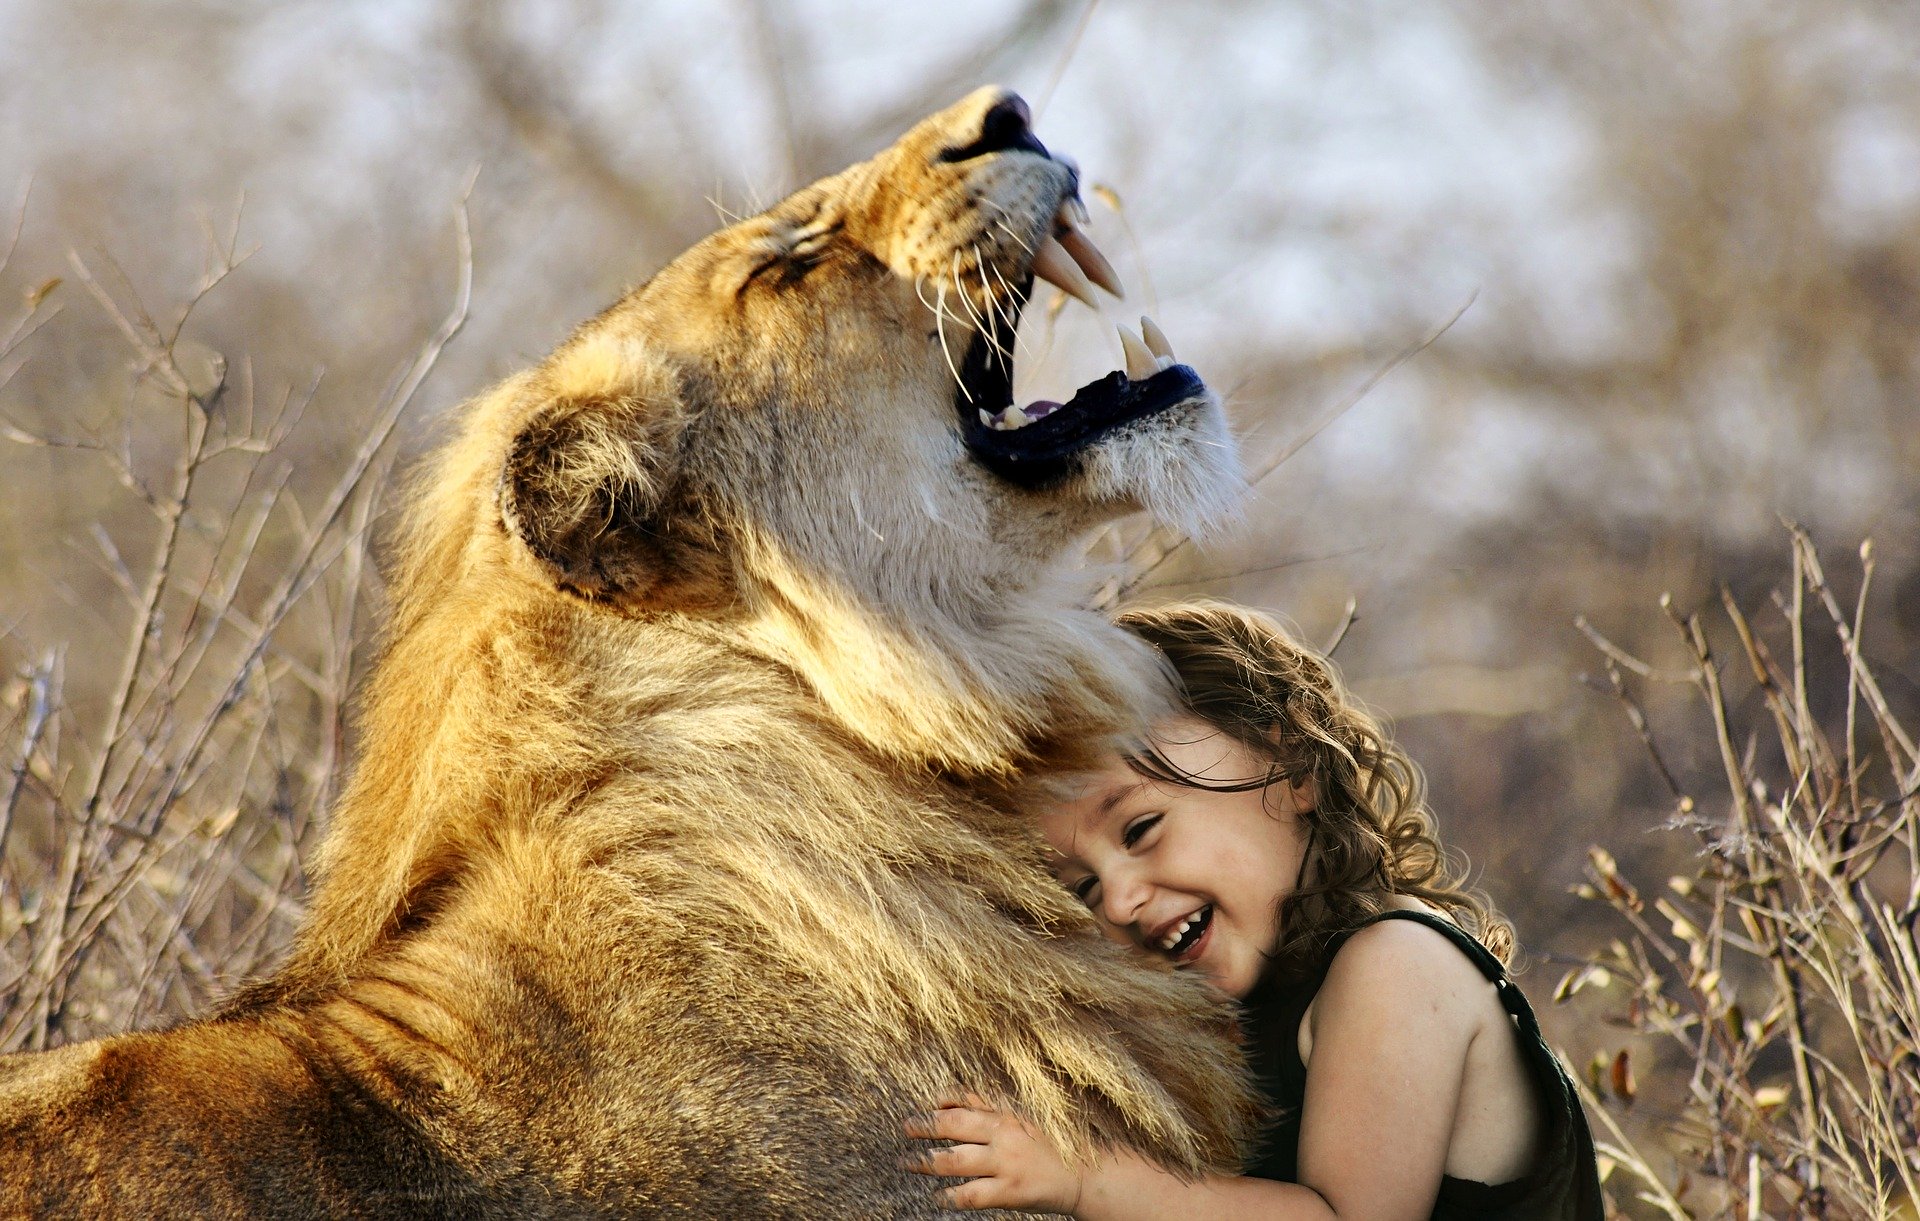 the lion hug